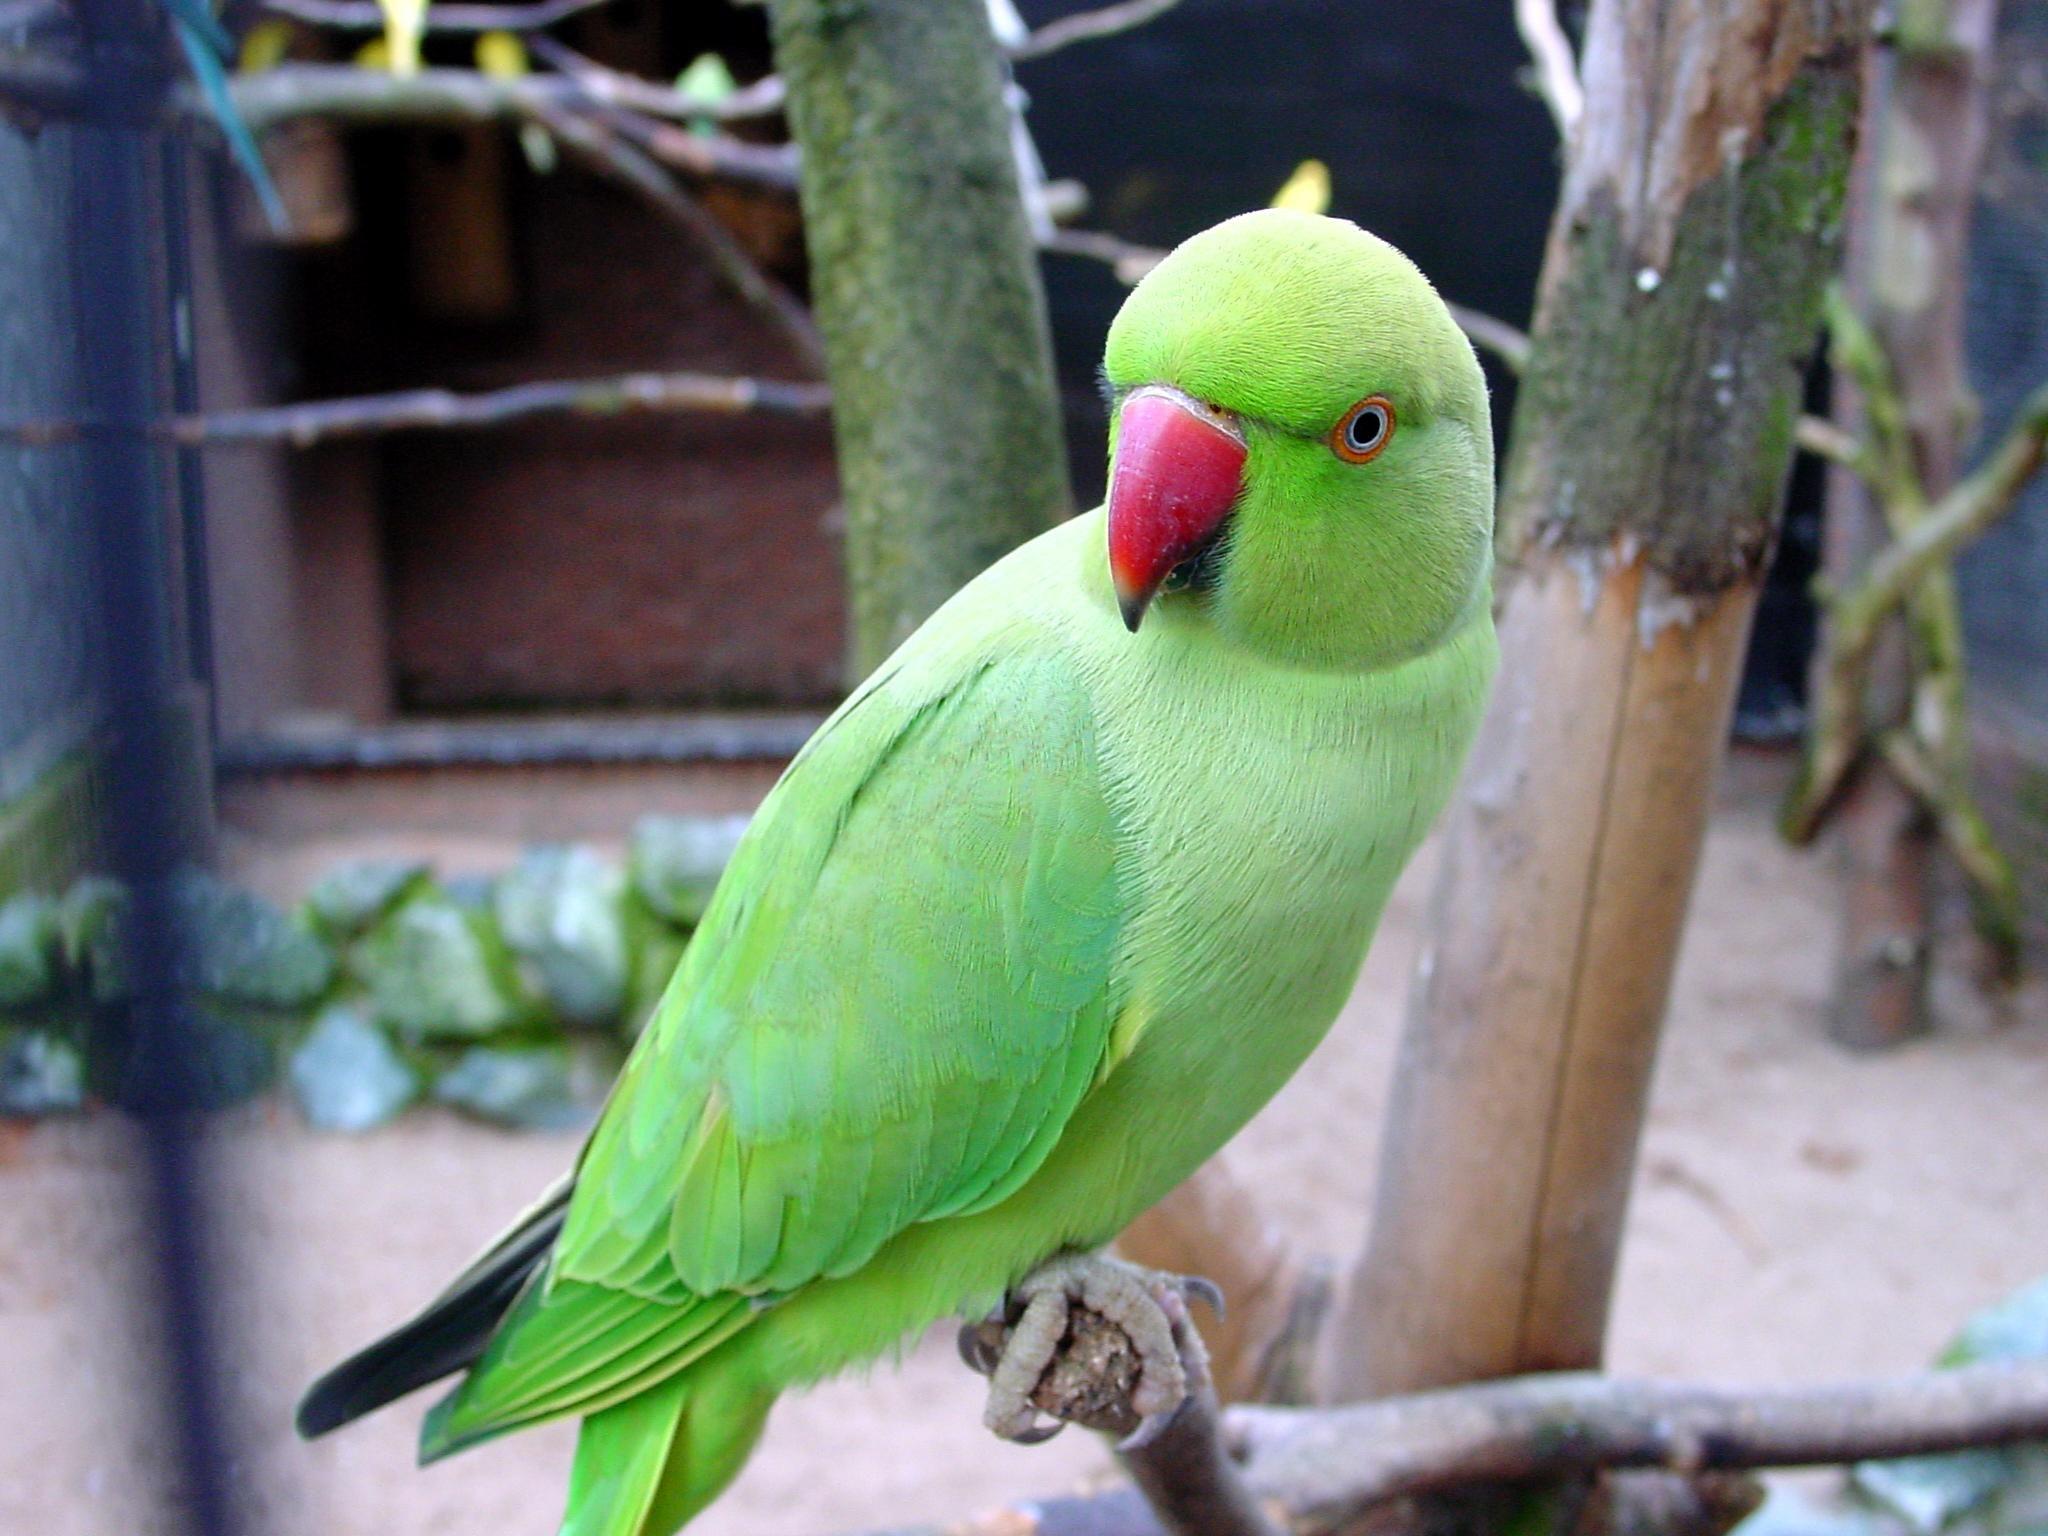 Green Parrots Wallpaper. feathers. Parrot, Parrot bird, Bird